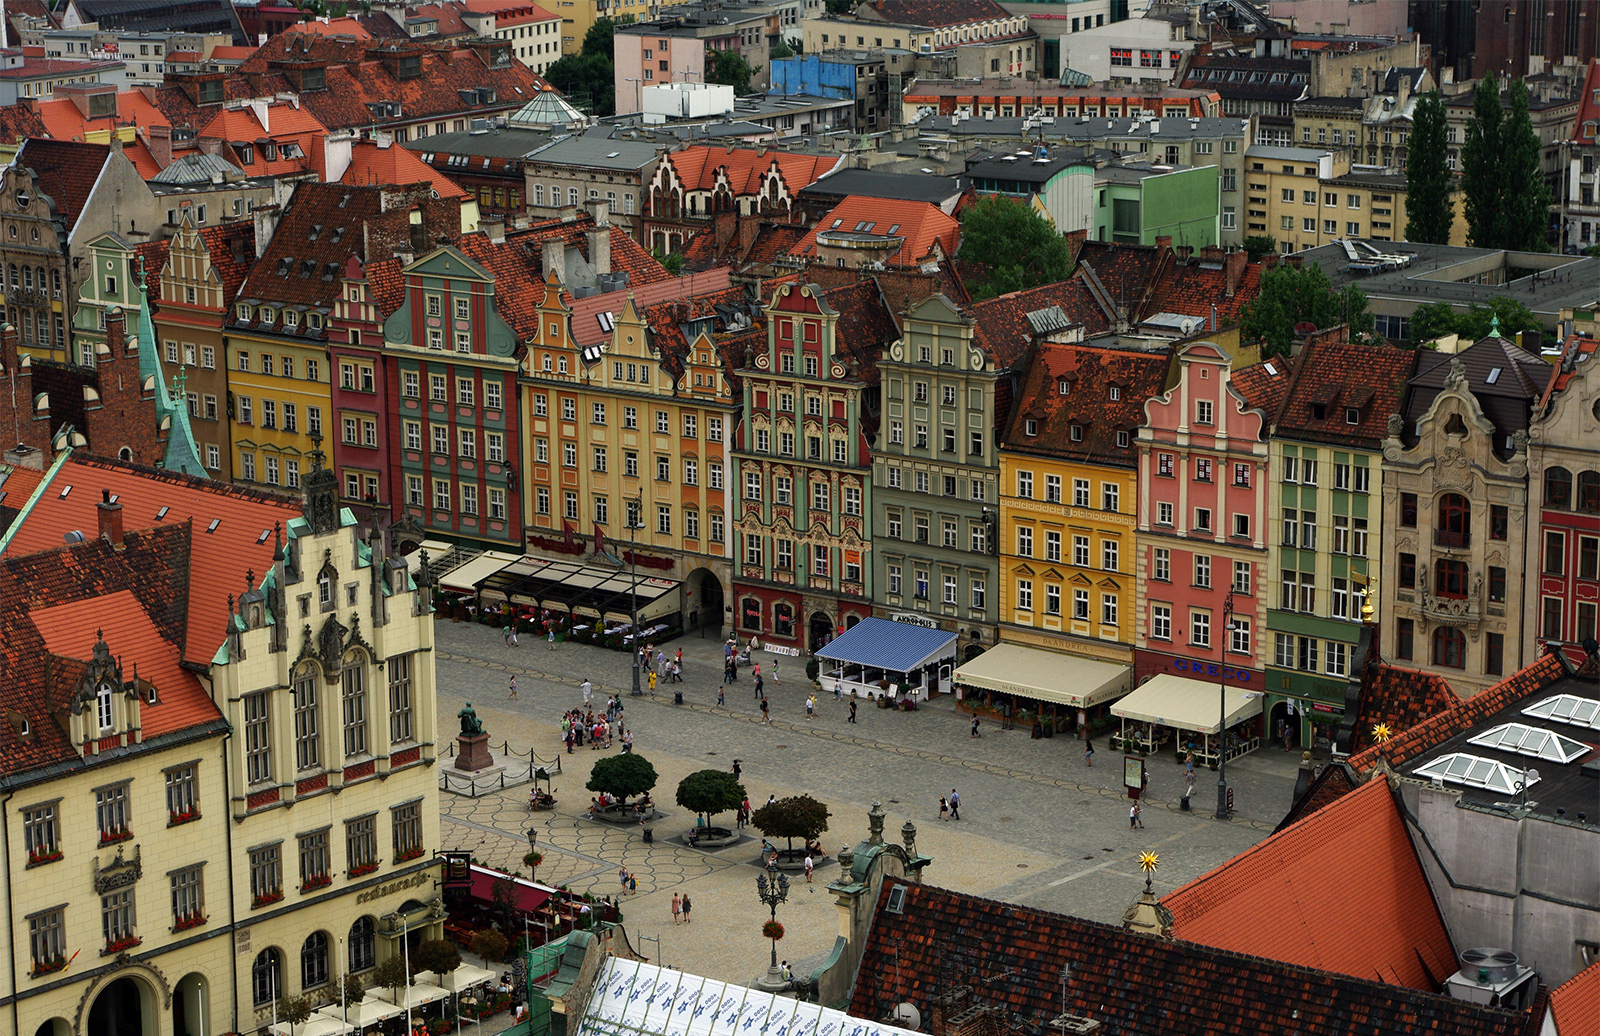 Wroclaw market square